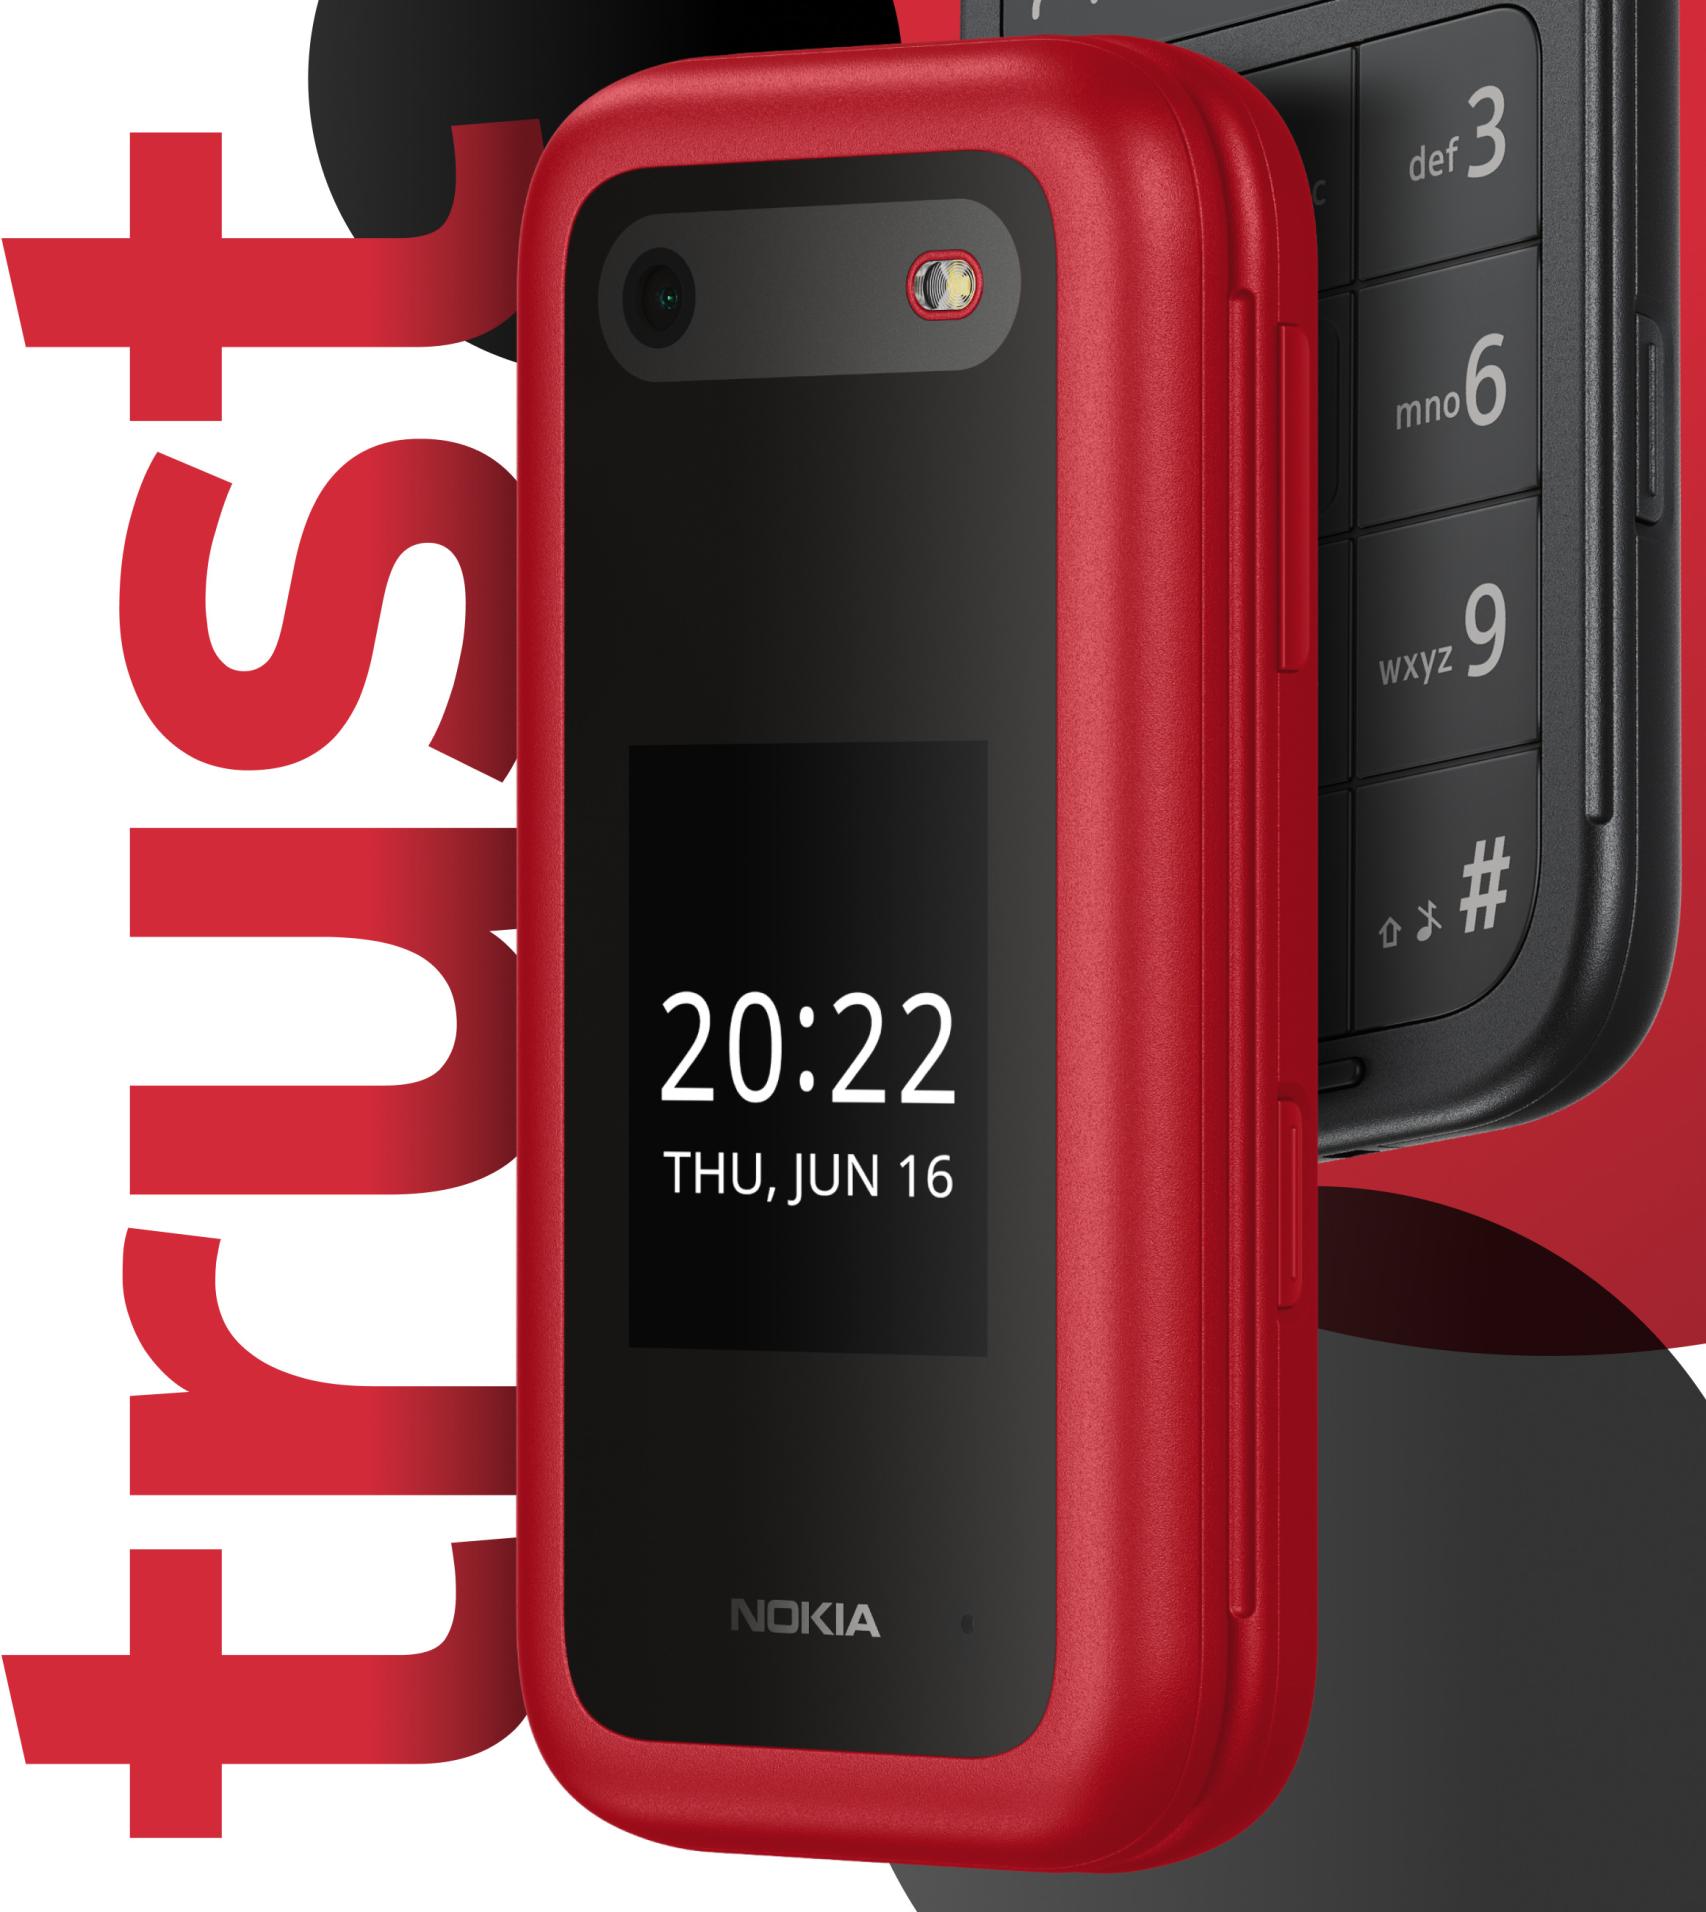 Nuevos Telefonos Moviles Libres de Ultima Generación (marca Nokia) baratos